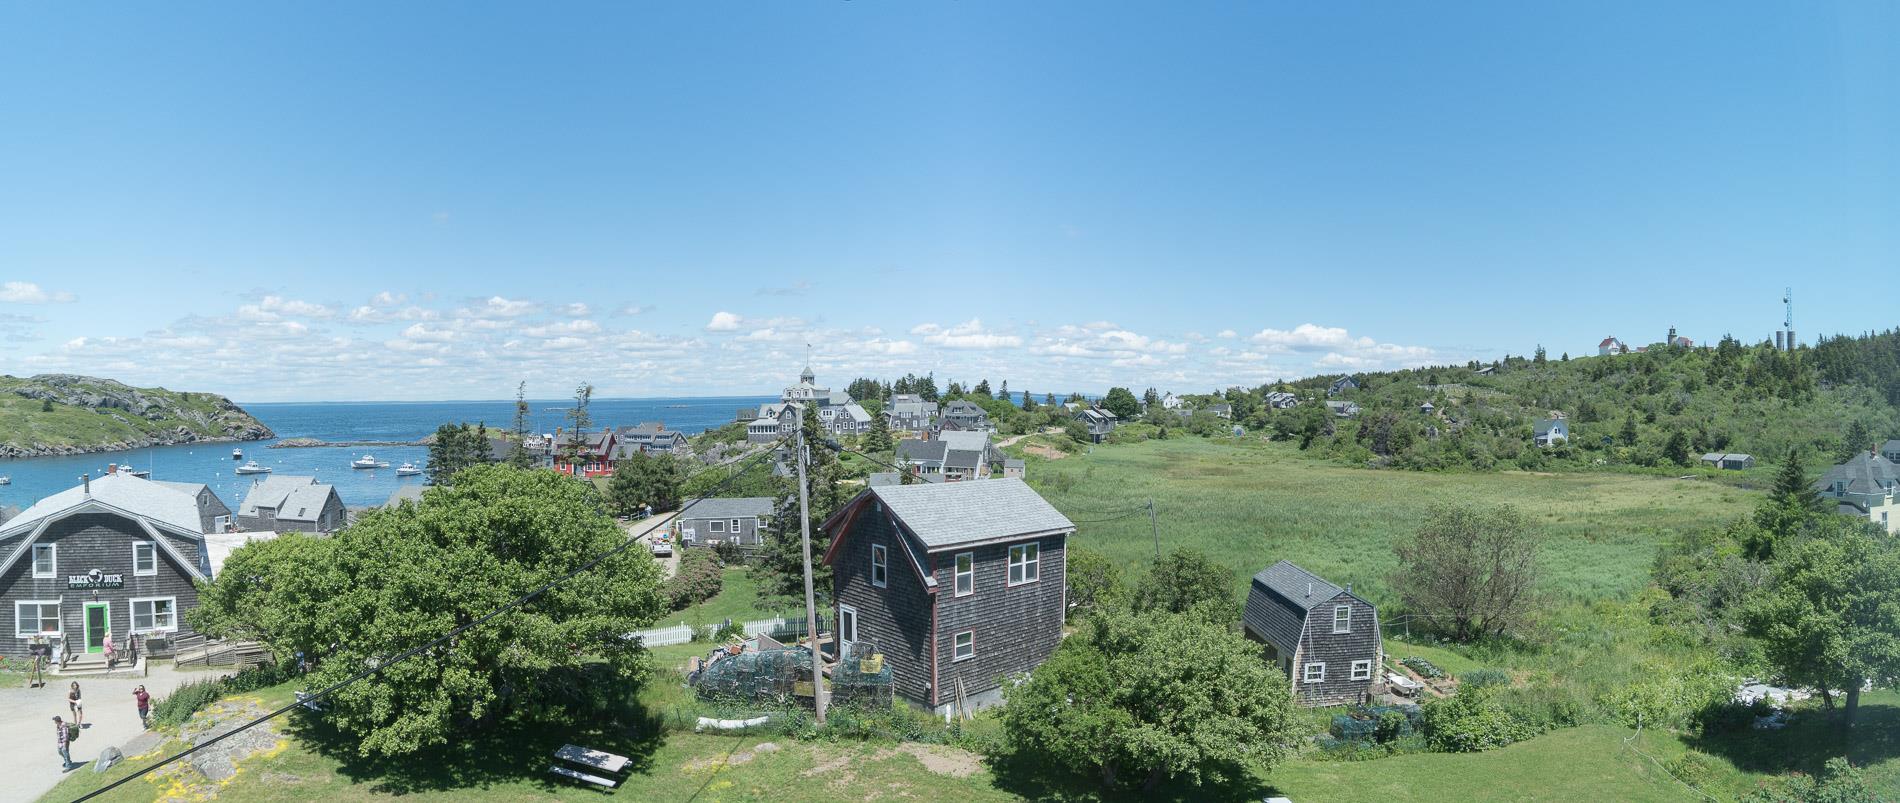 A wide view of Monhegan, Maine